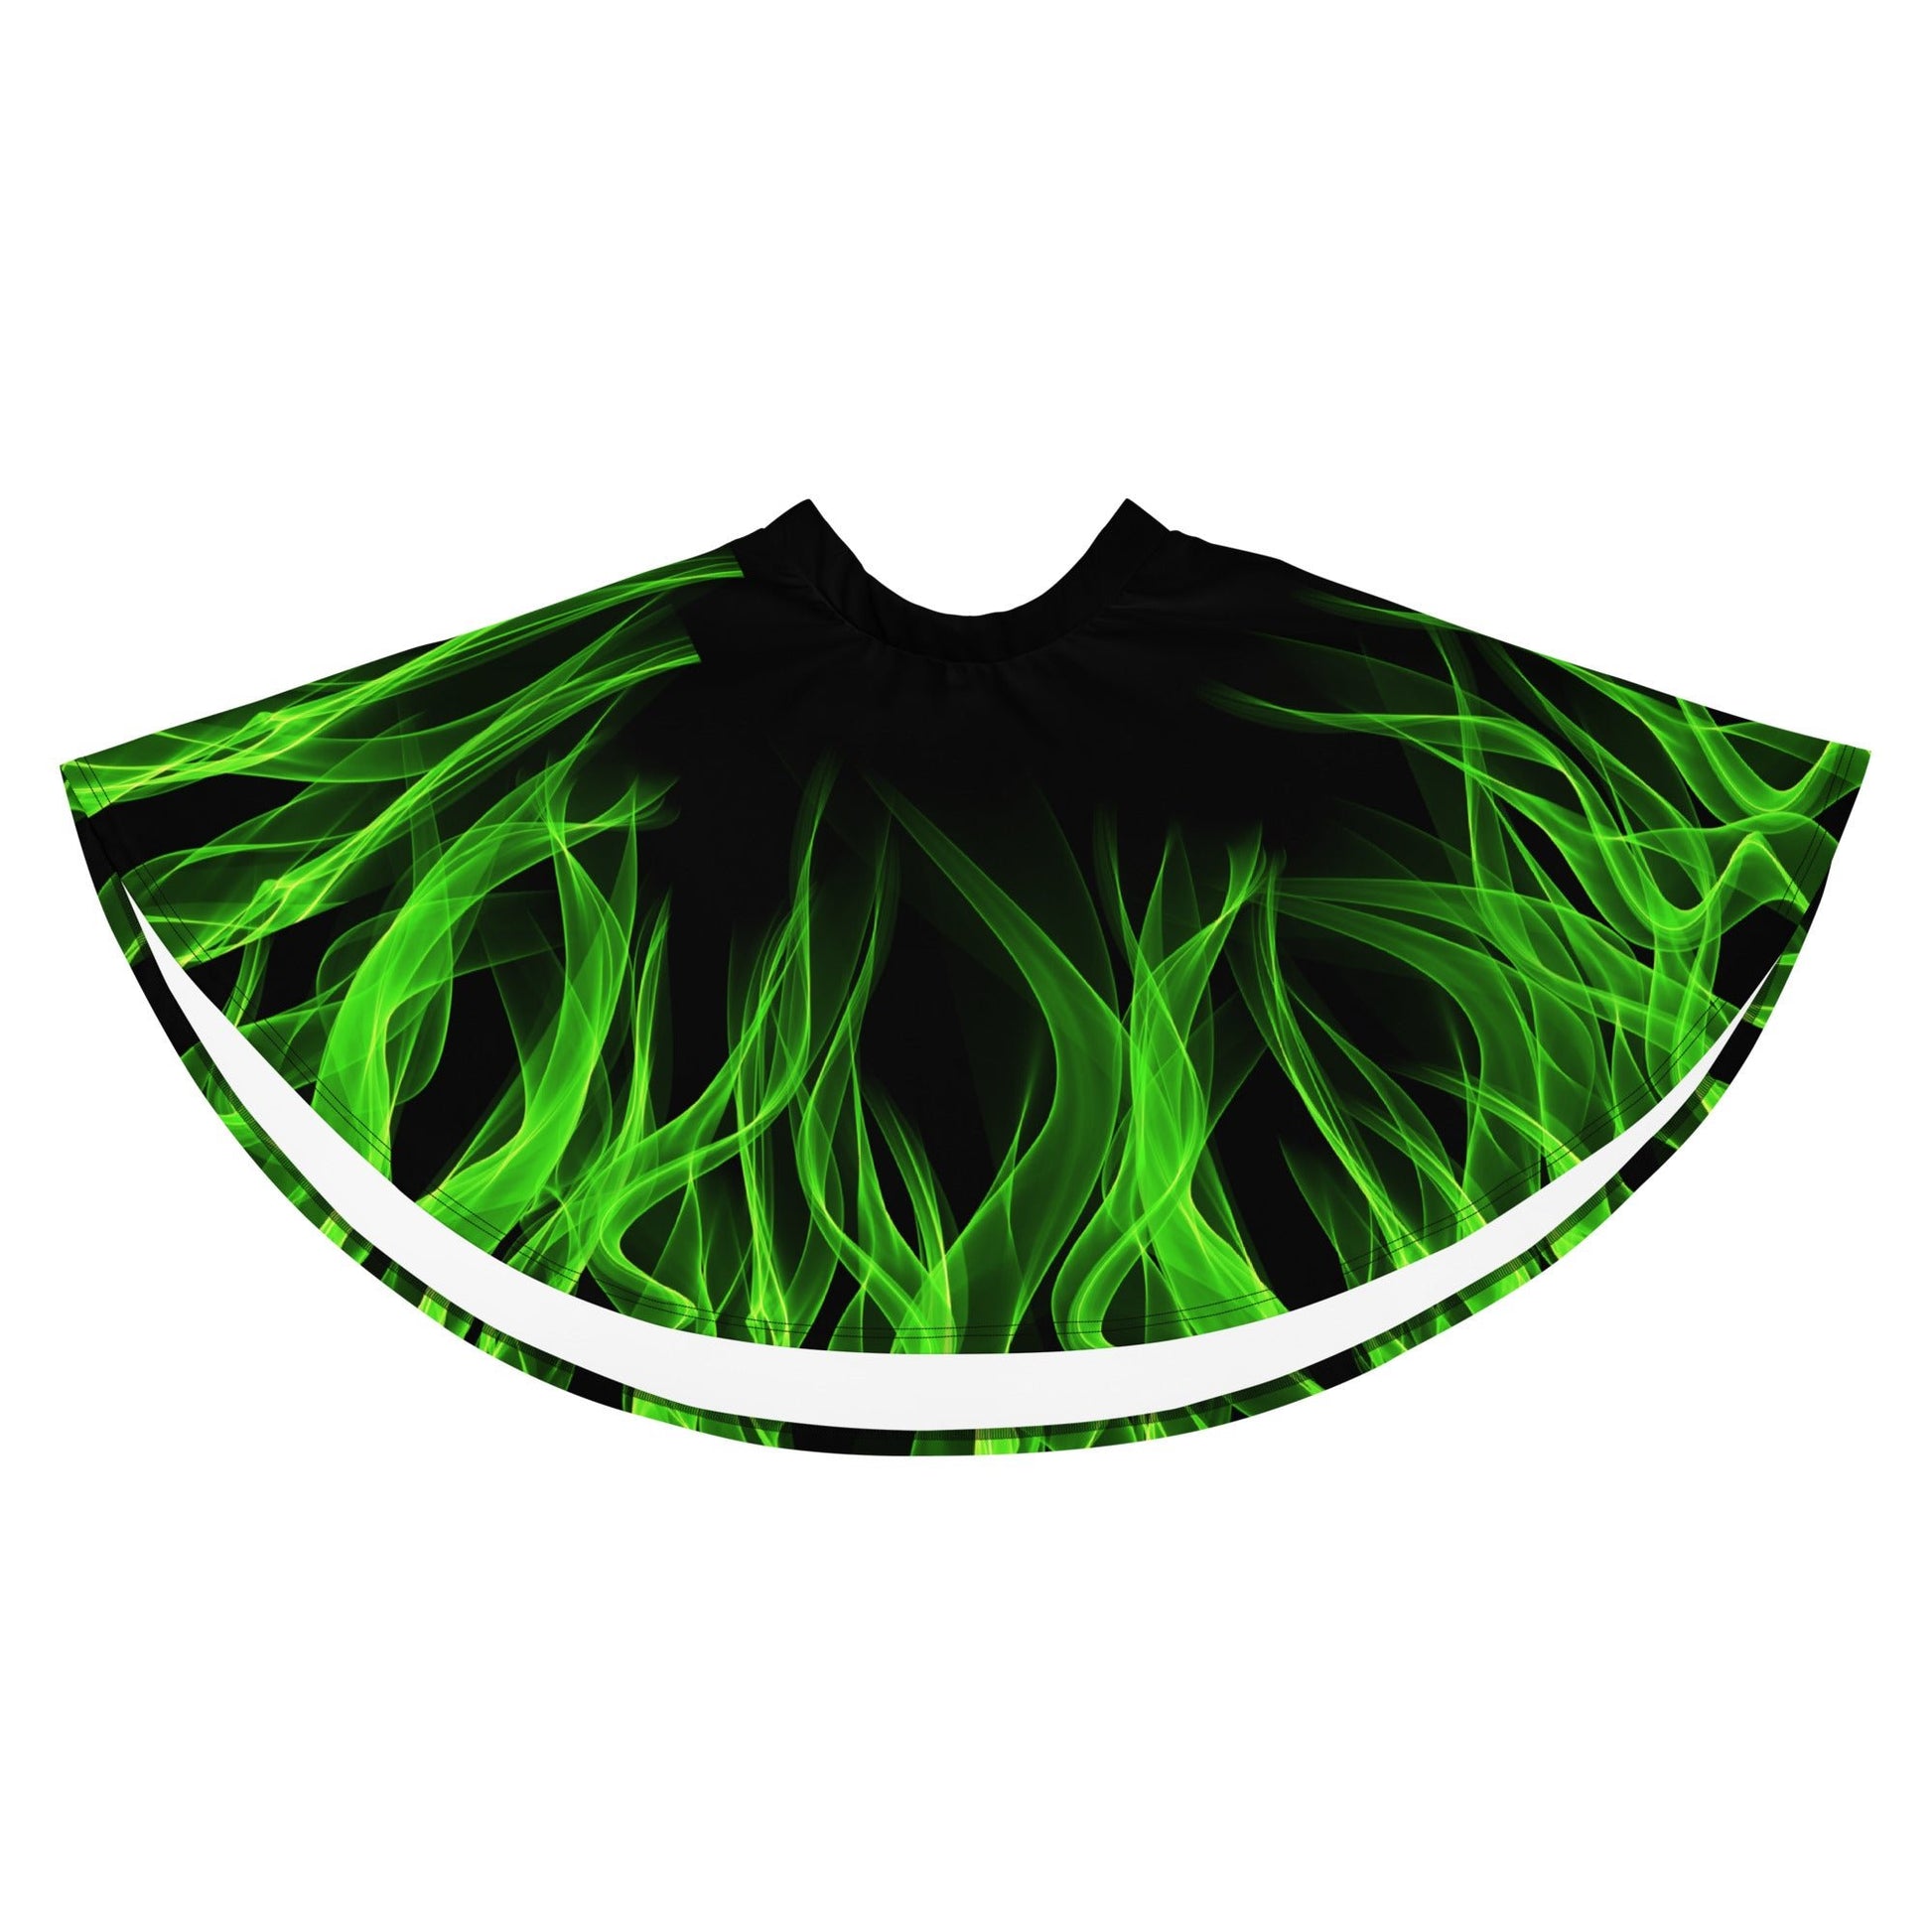 Green Flame Skater Skirt boundingcosplayWrong Lever Clothing